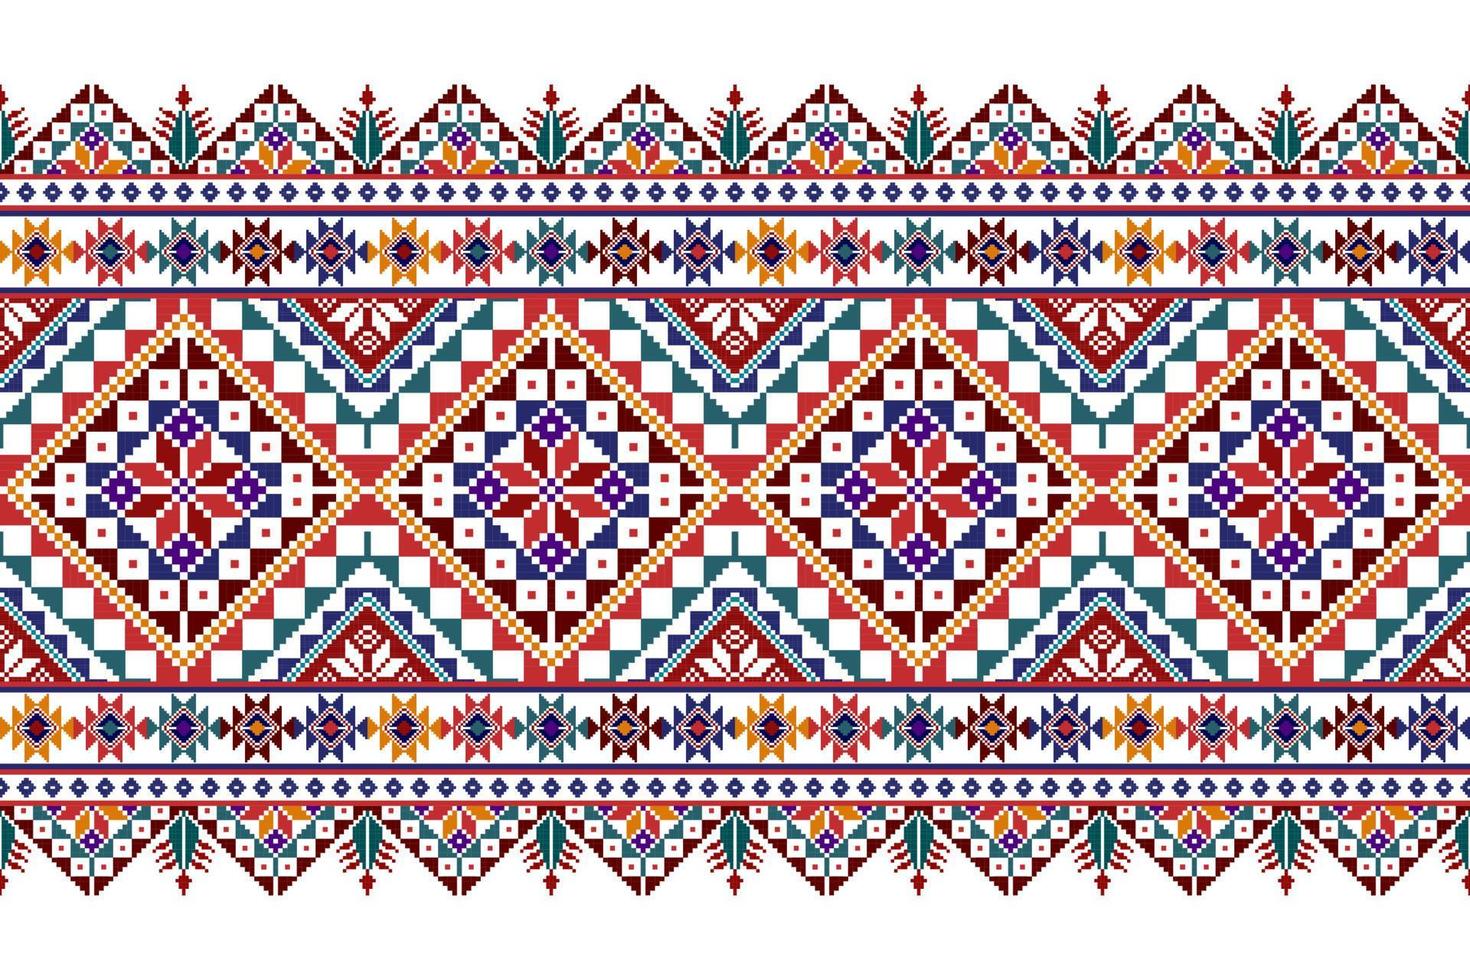 tartreez palestinese astratto geometrico etnico tessile modello design. tappeto in tessuto azteco ornamenti mandala decorazioni tessili carta da parati. ricamo tradizionale tessile senza cuciture nativo boho tribale vettore